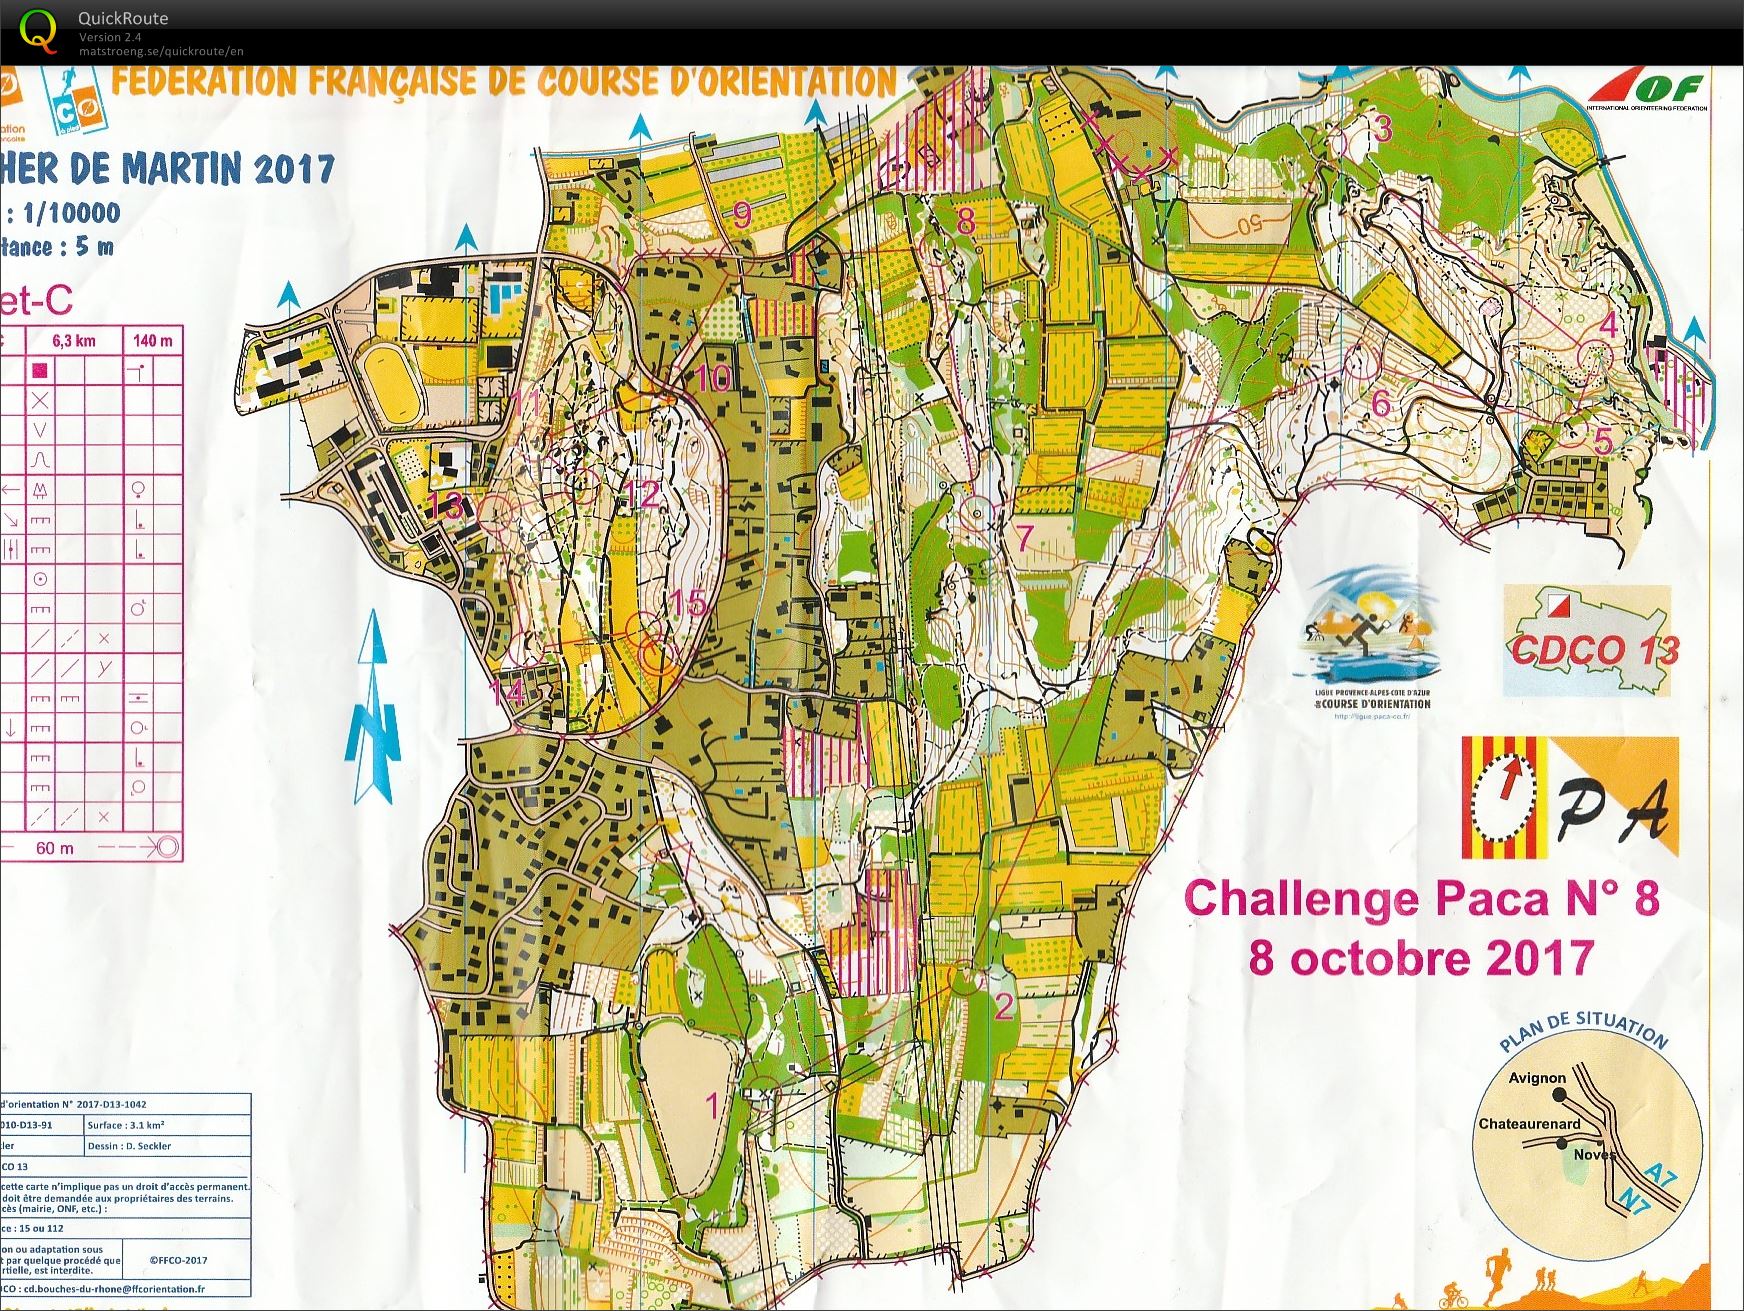 Challenge PACA n° 8 Chateaurenard (08/10/2017)